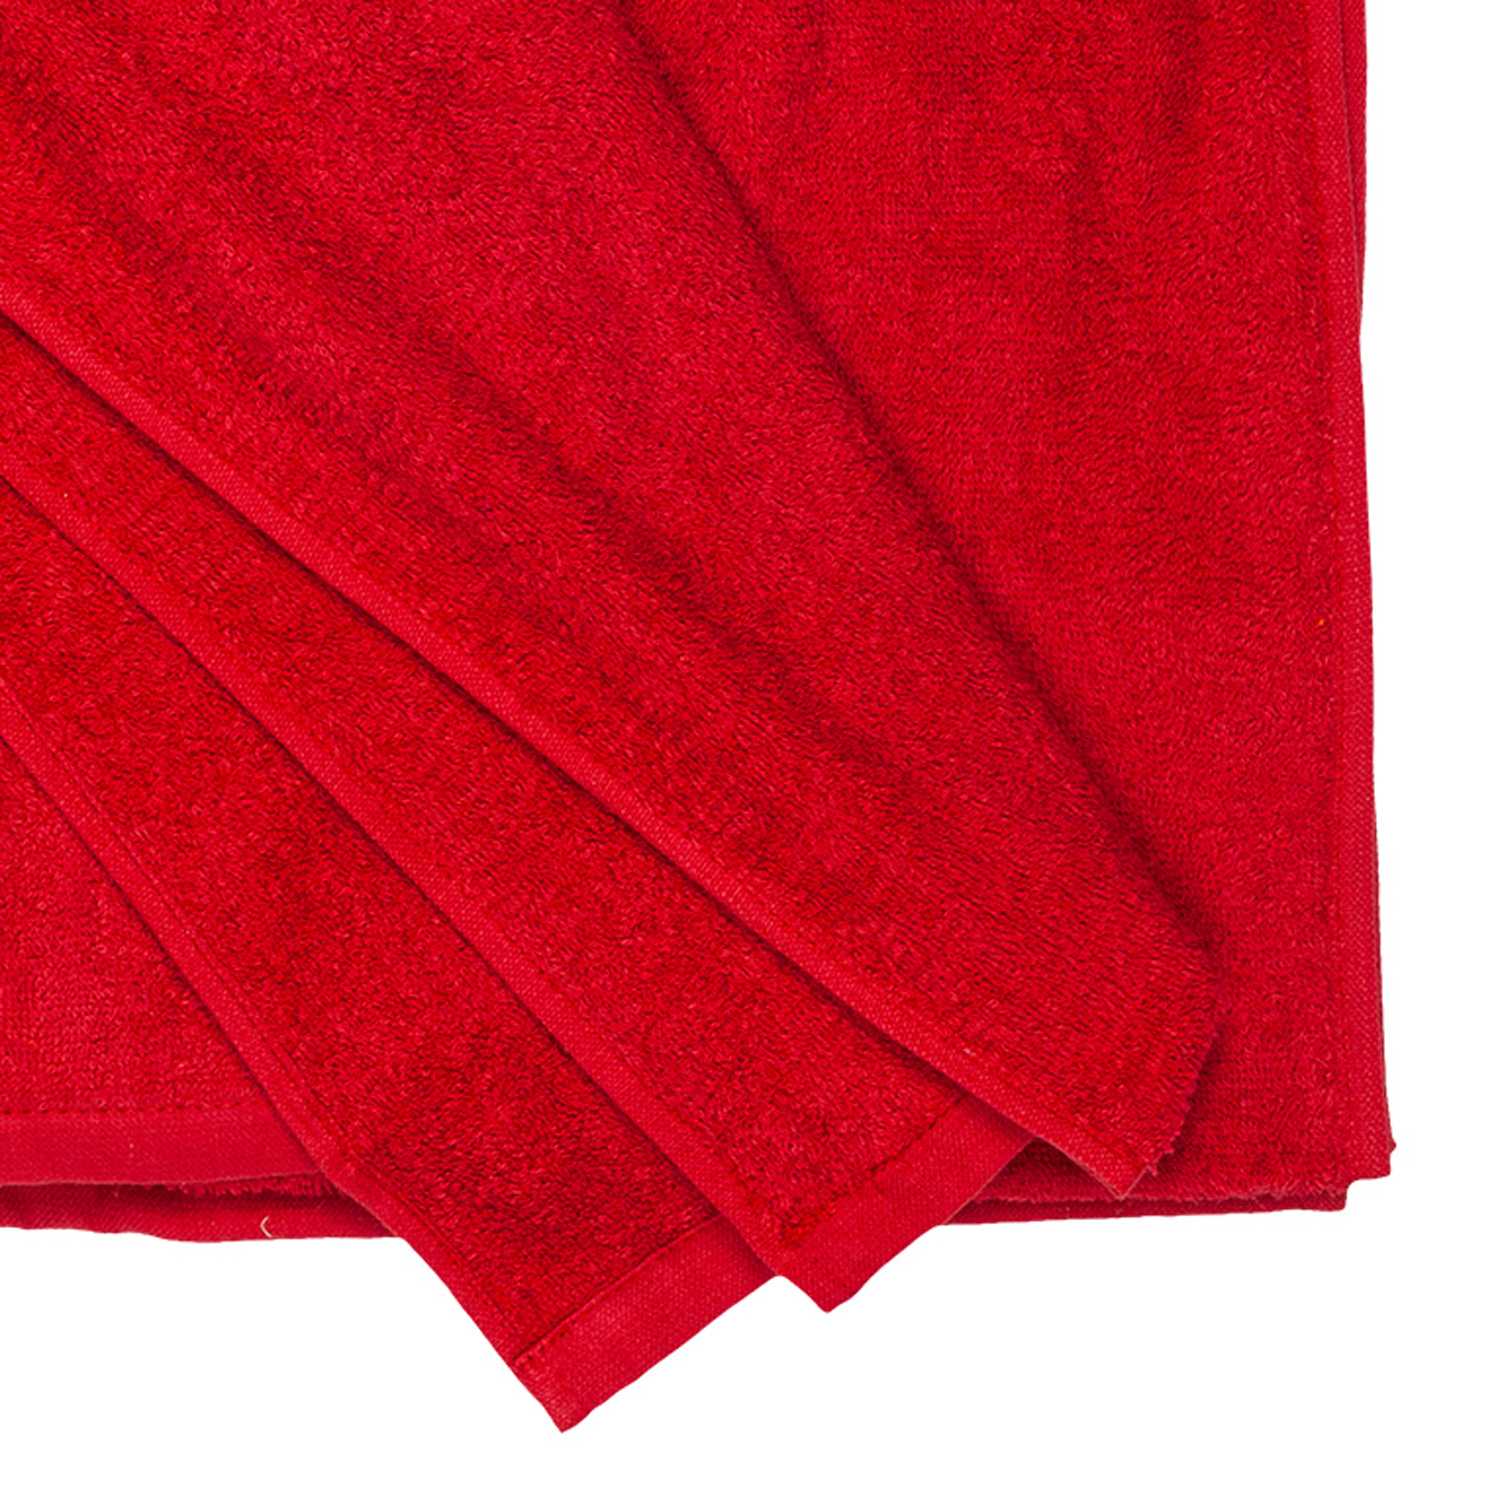 XXL Strandtuch HELSINKI in rot von Adamo in großen Größen bis 155x220 cm